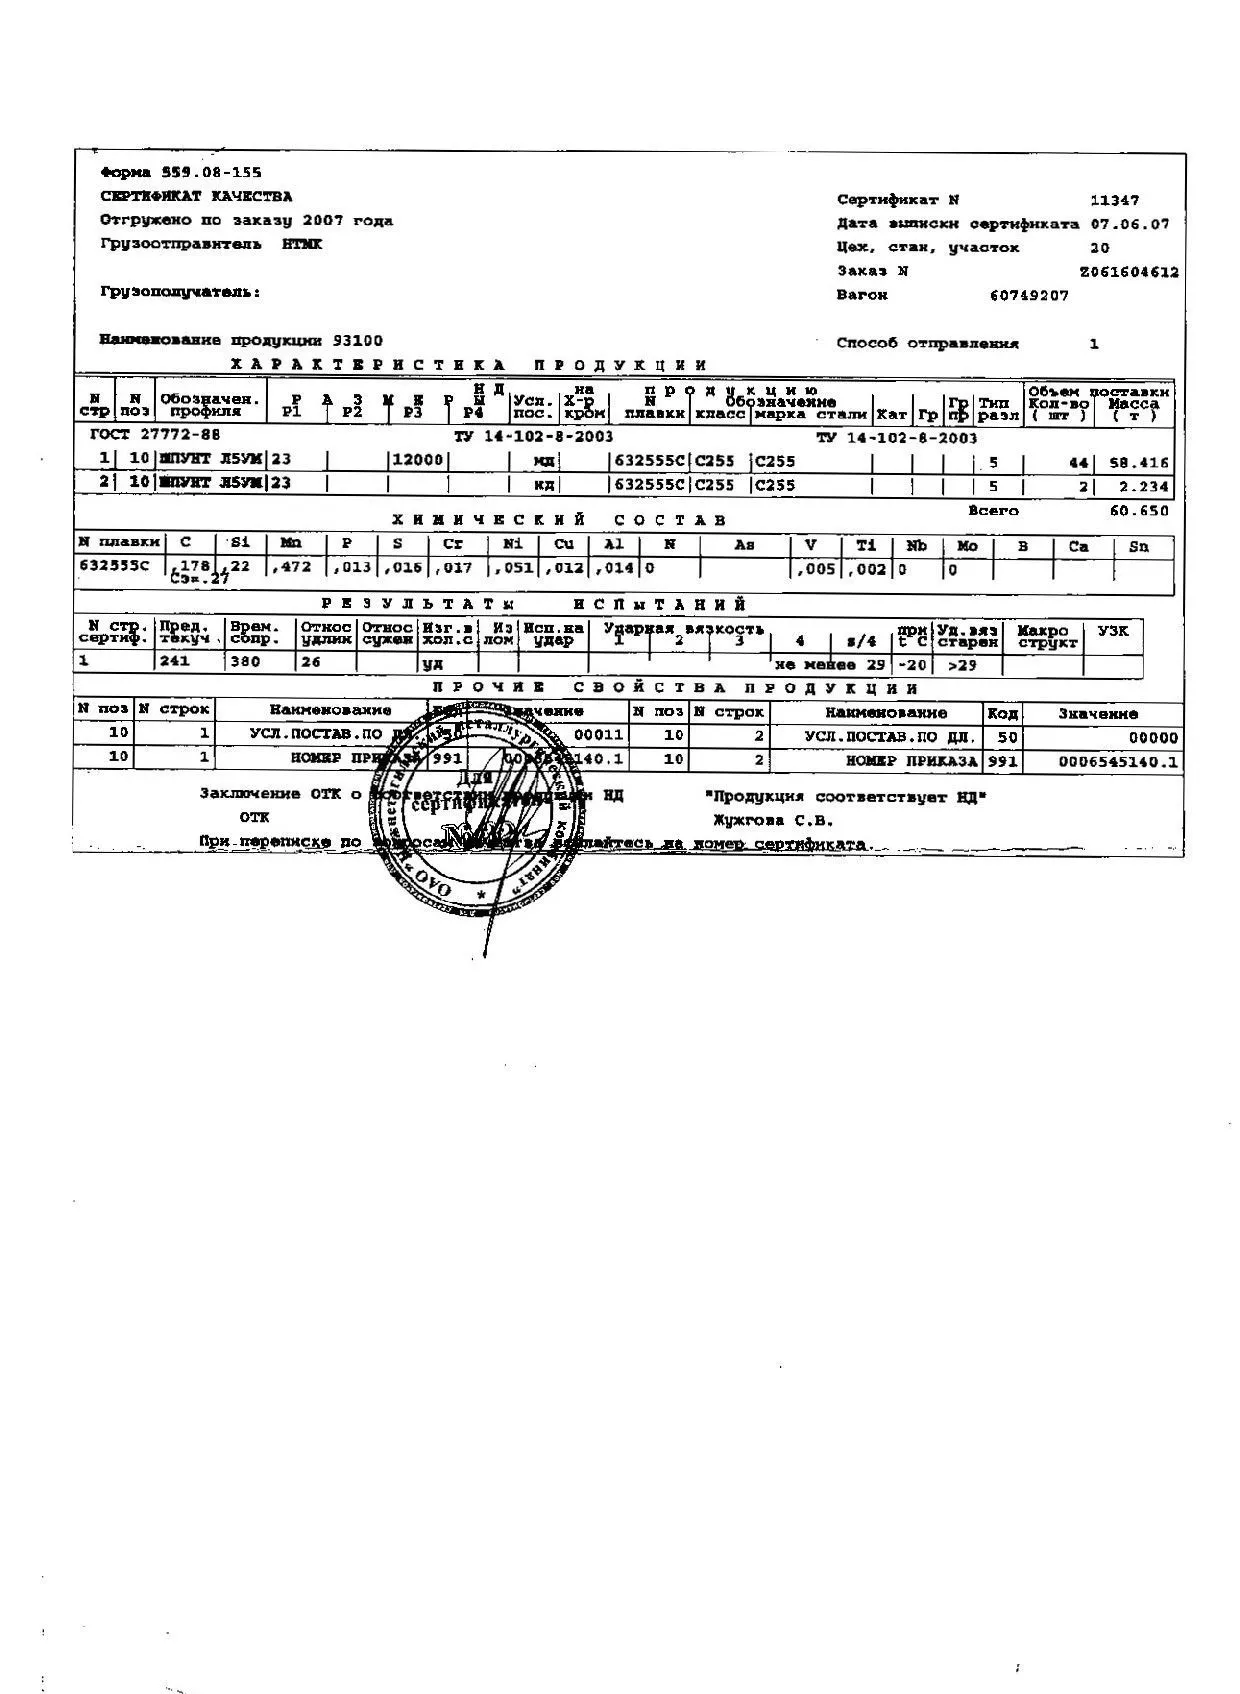 Сертификат на шпунт Л5УМ 23 (12) от 06-07